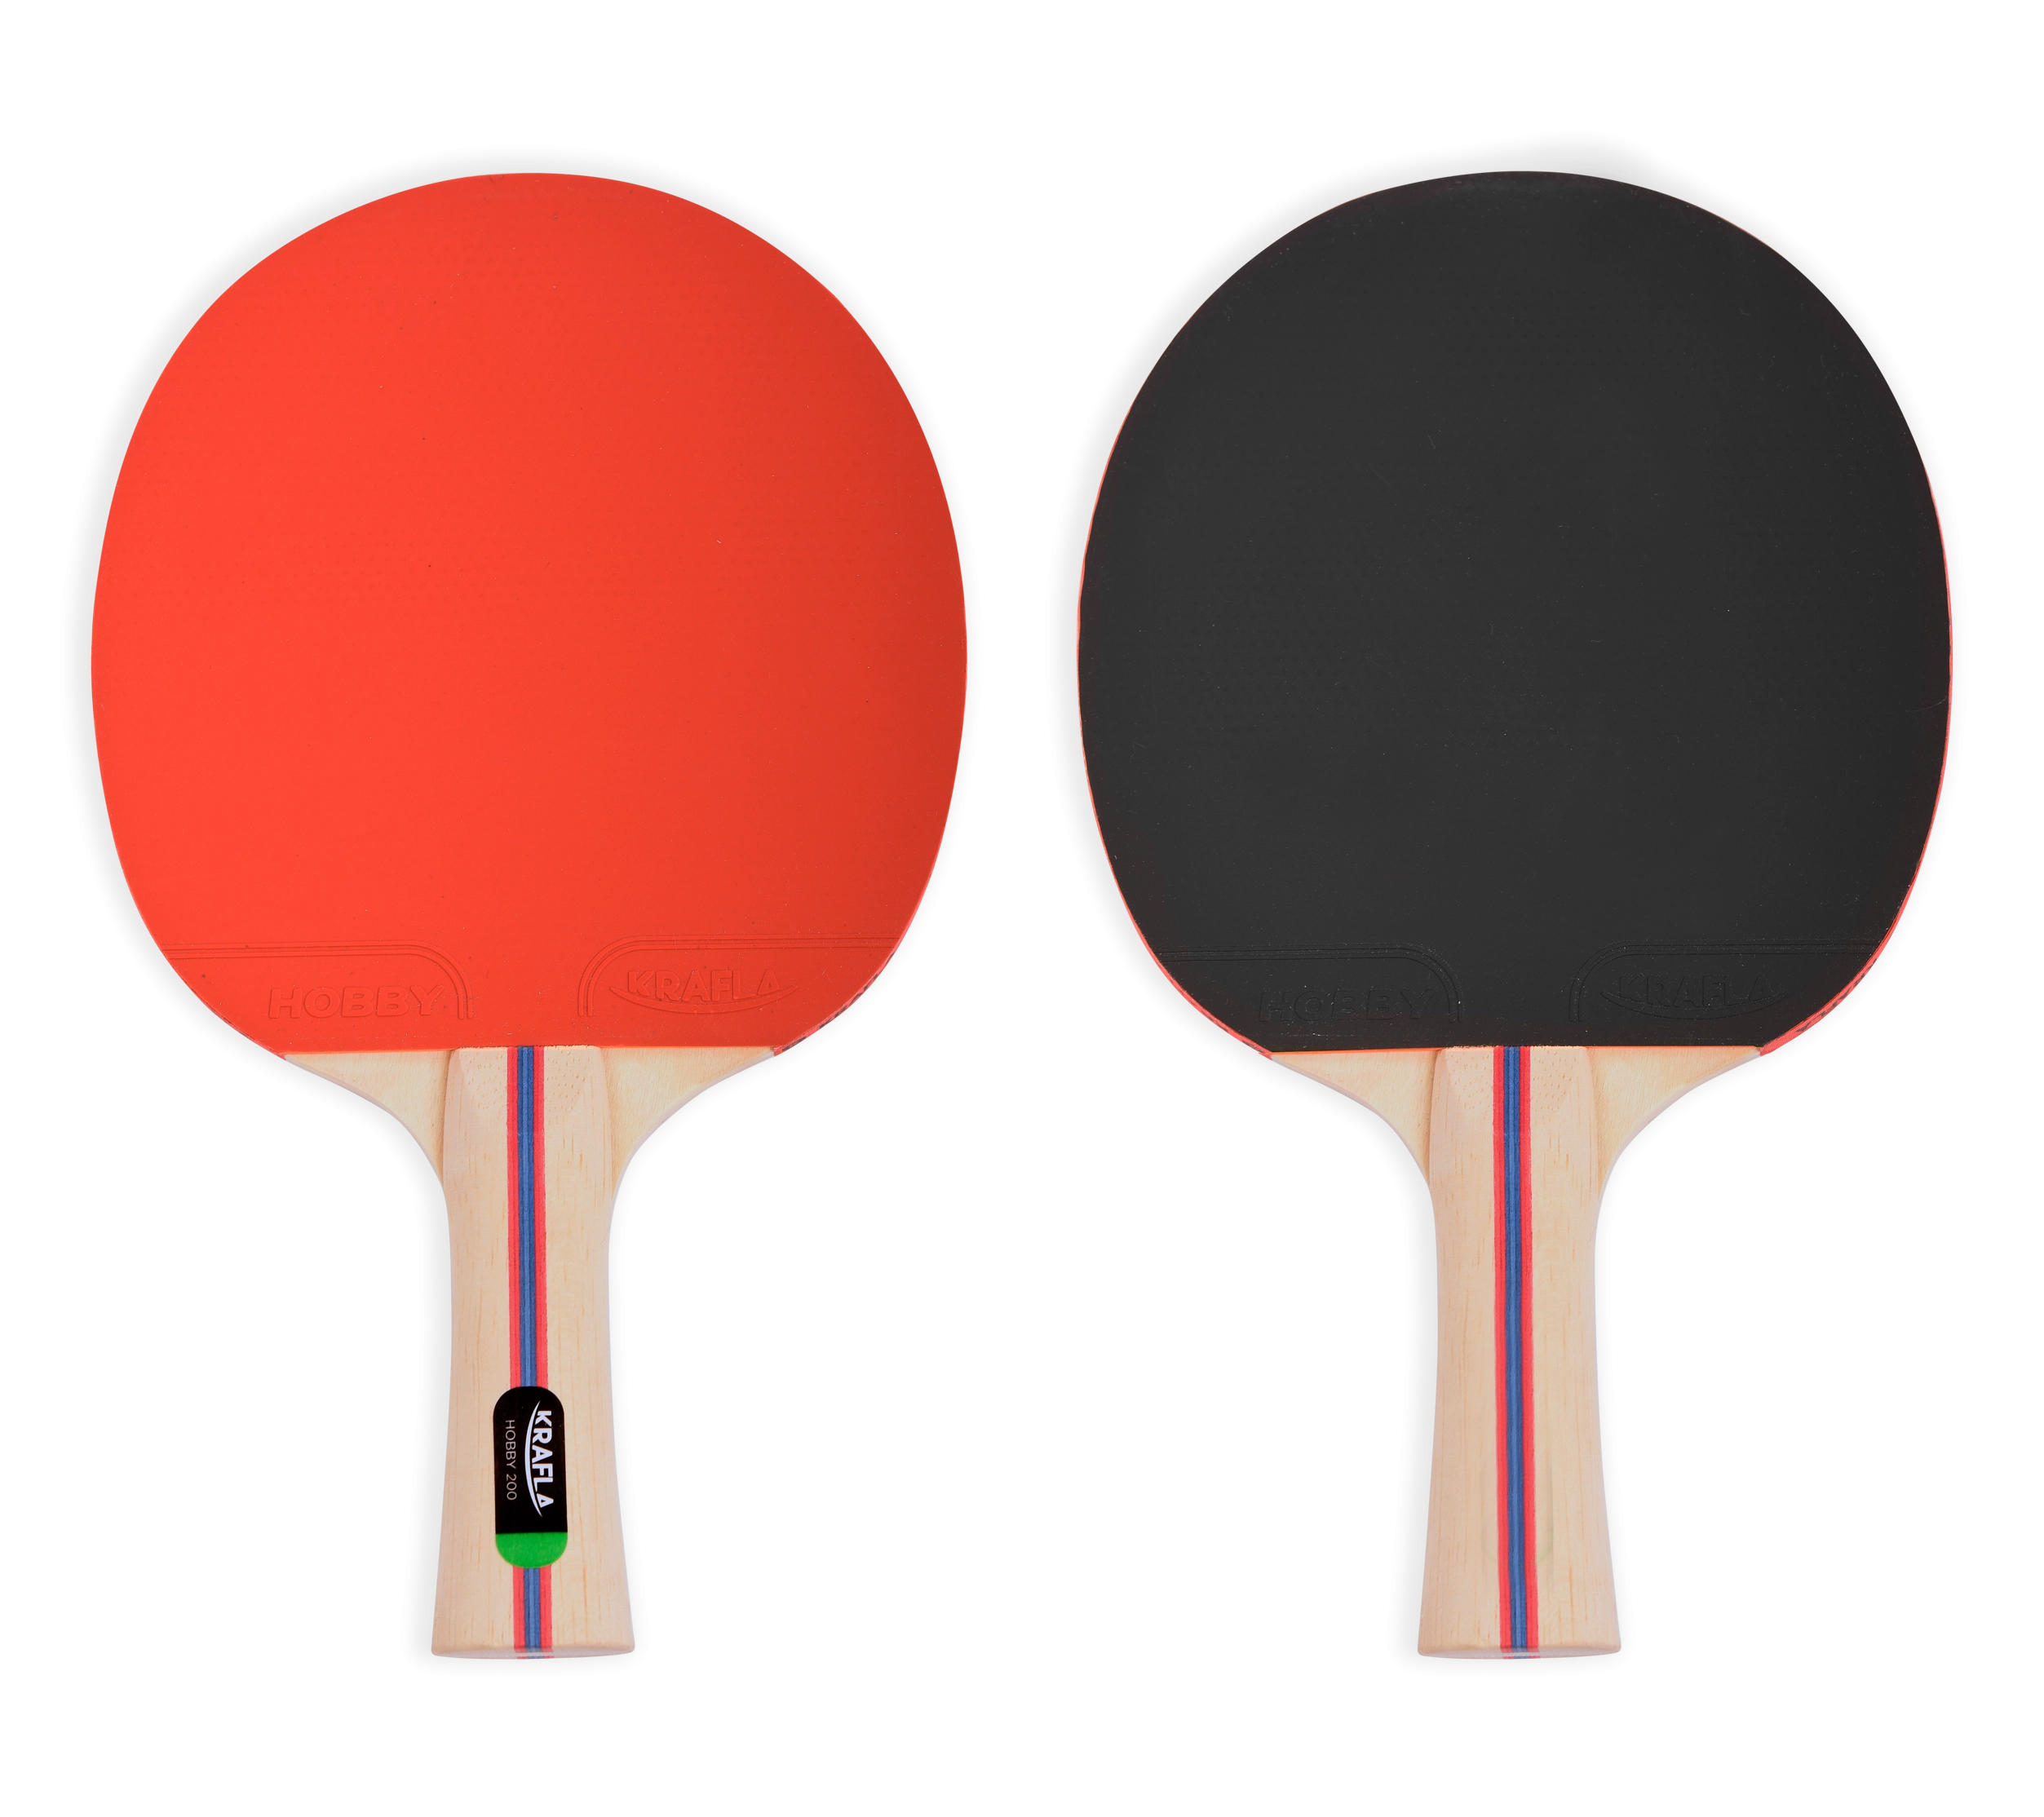 Особенности KRAFLA S-H200 Набор для настольного тенниса (ракетки 2шт., мяч 3шт.)